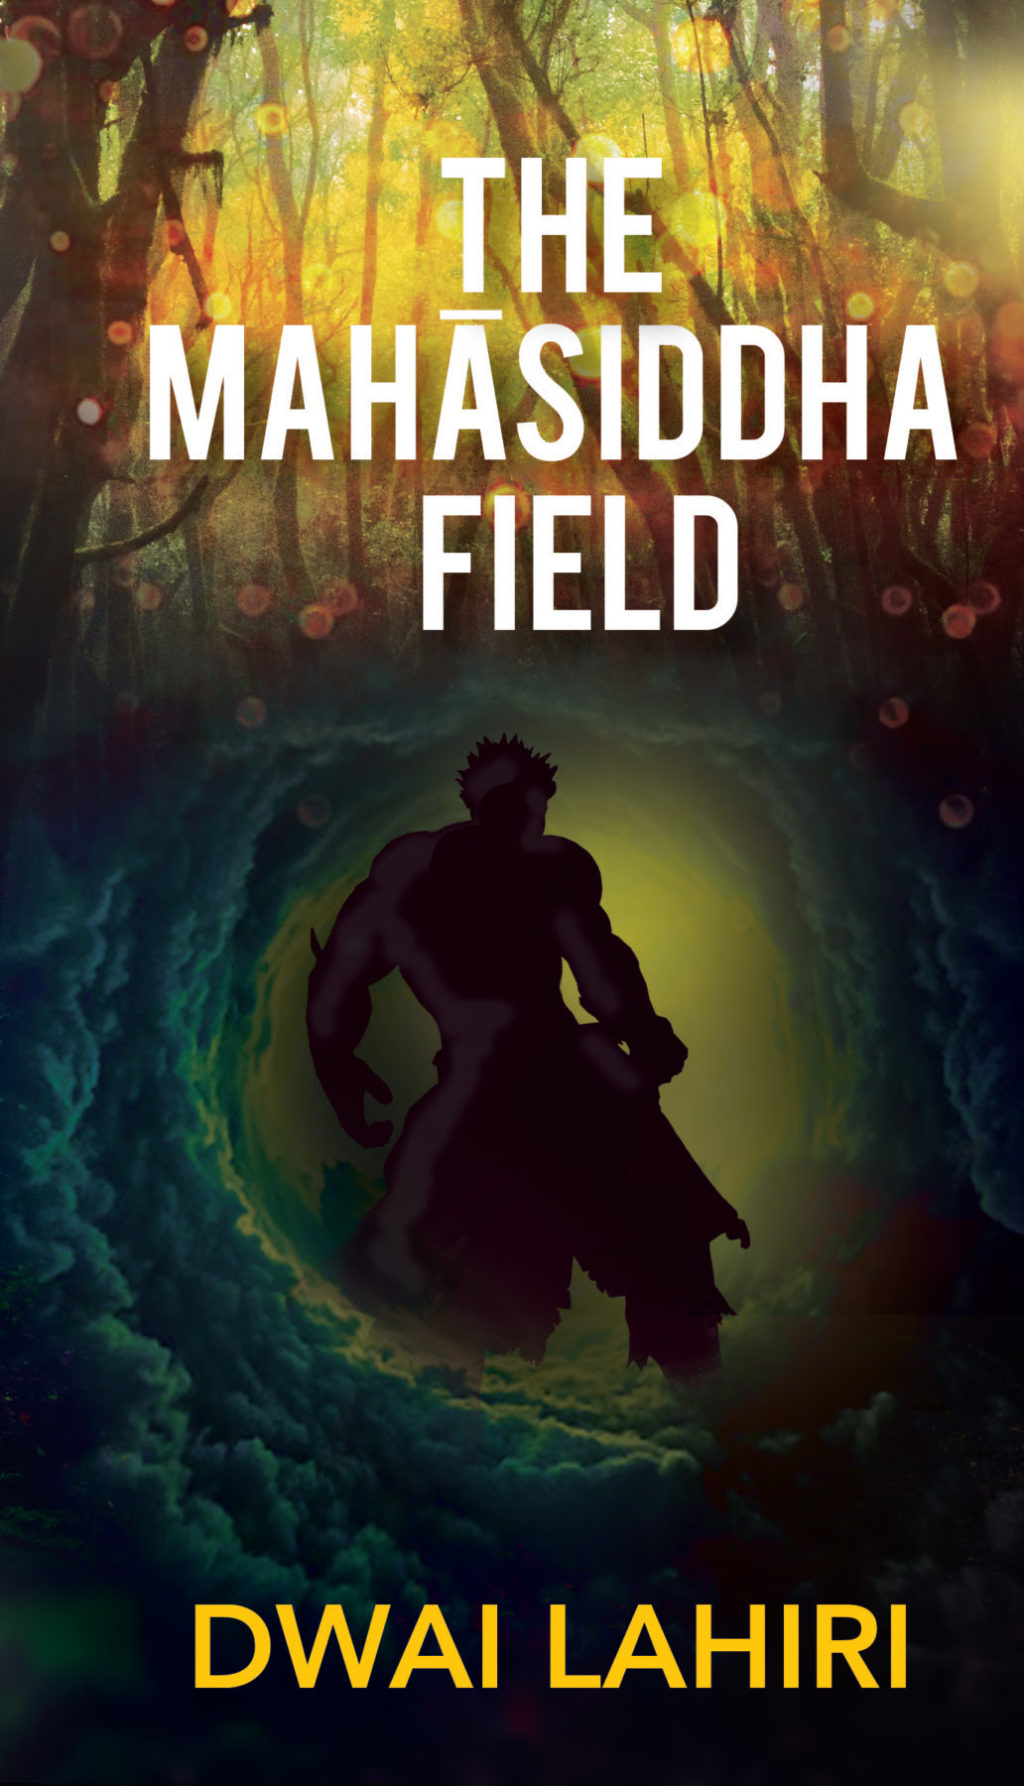 The Mahasiddha Field